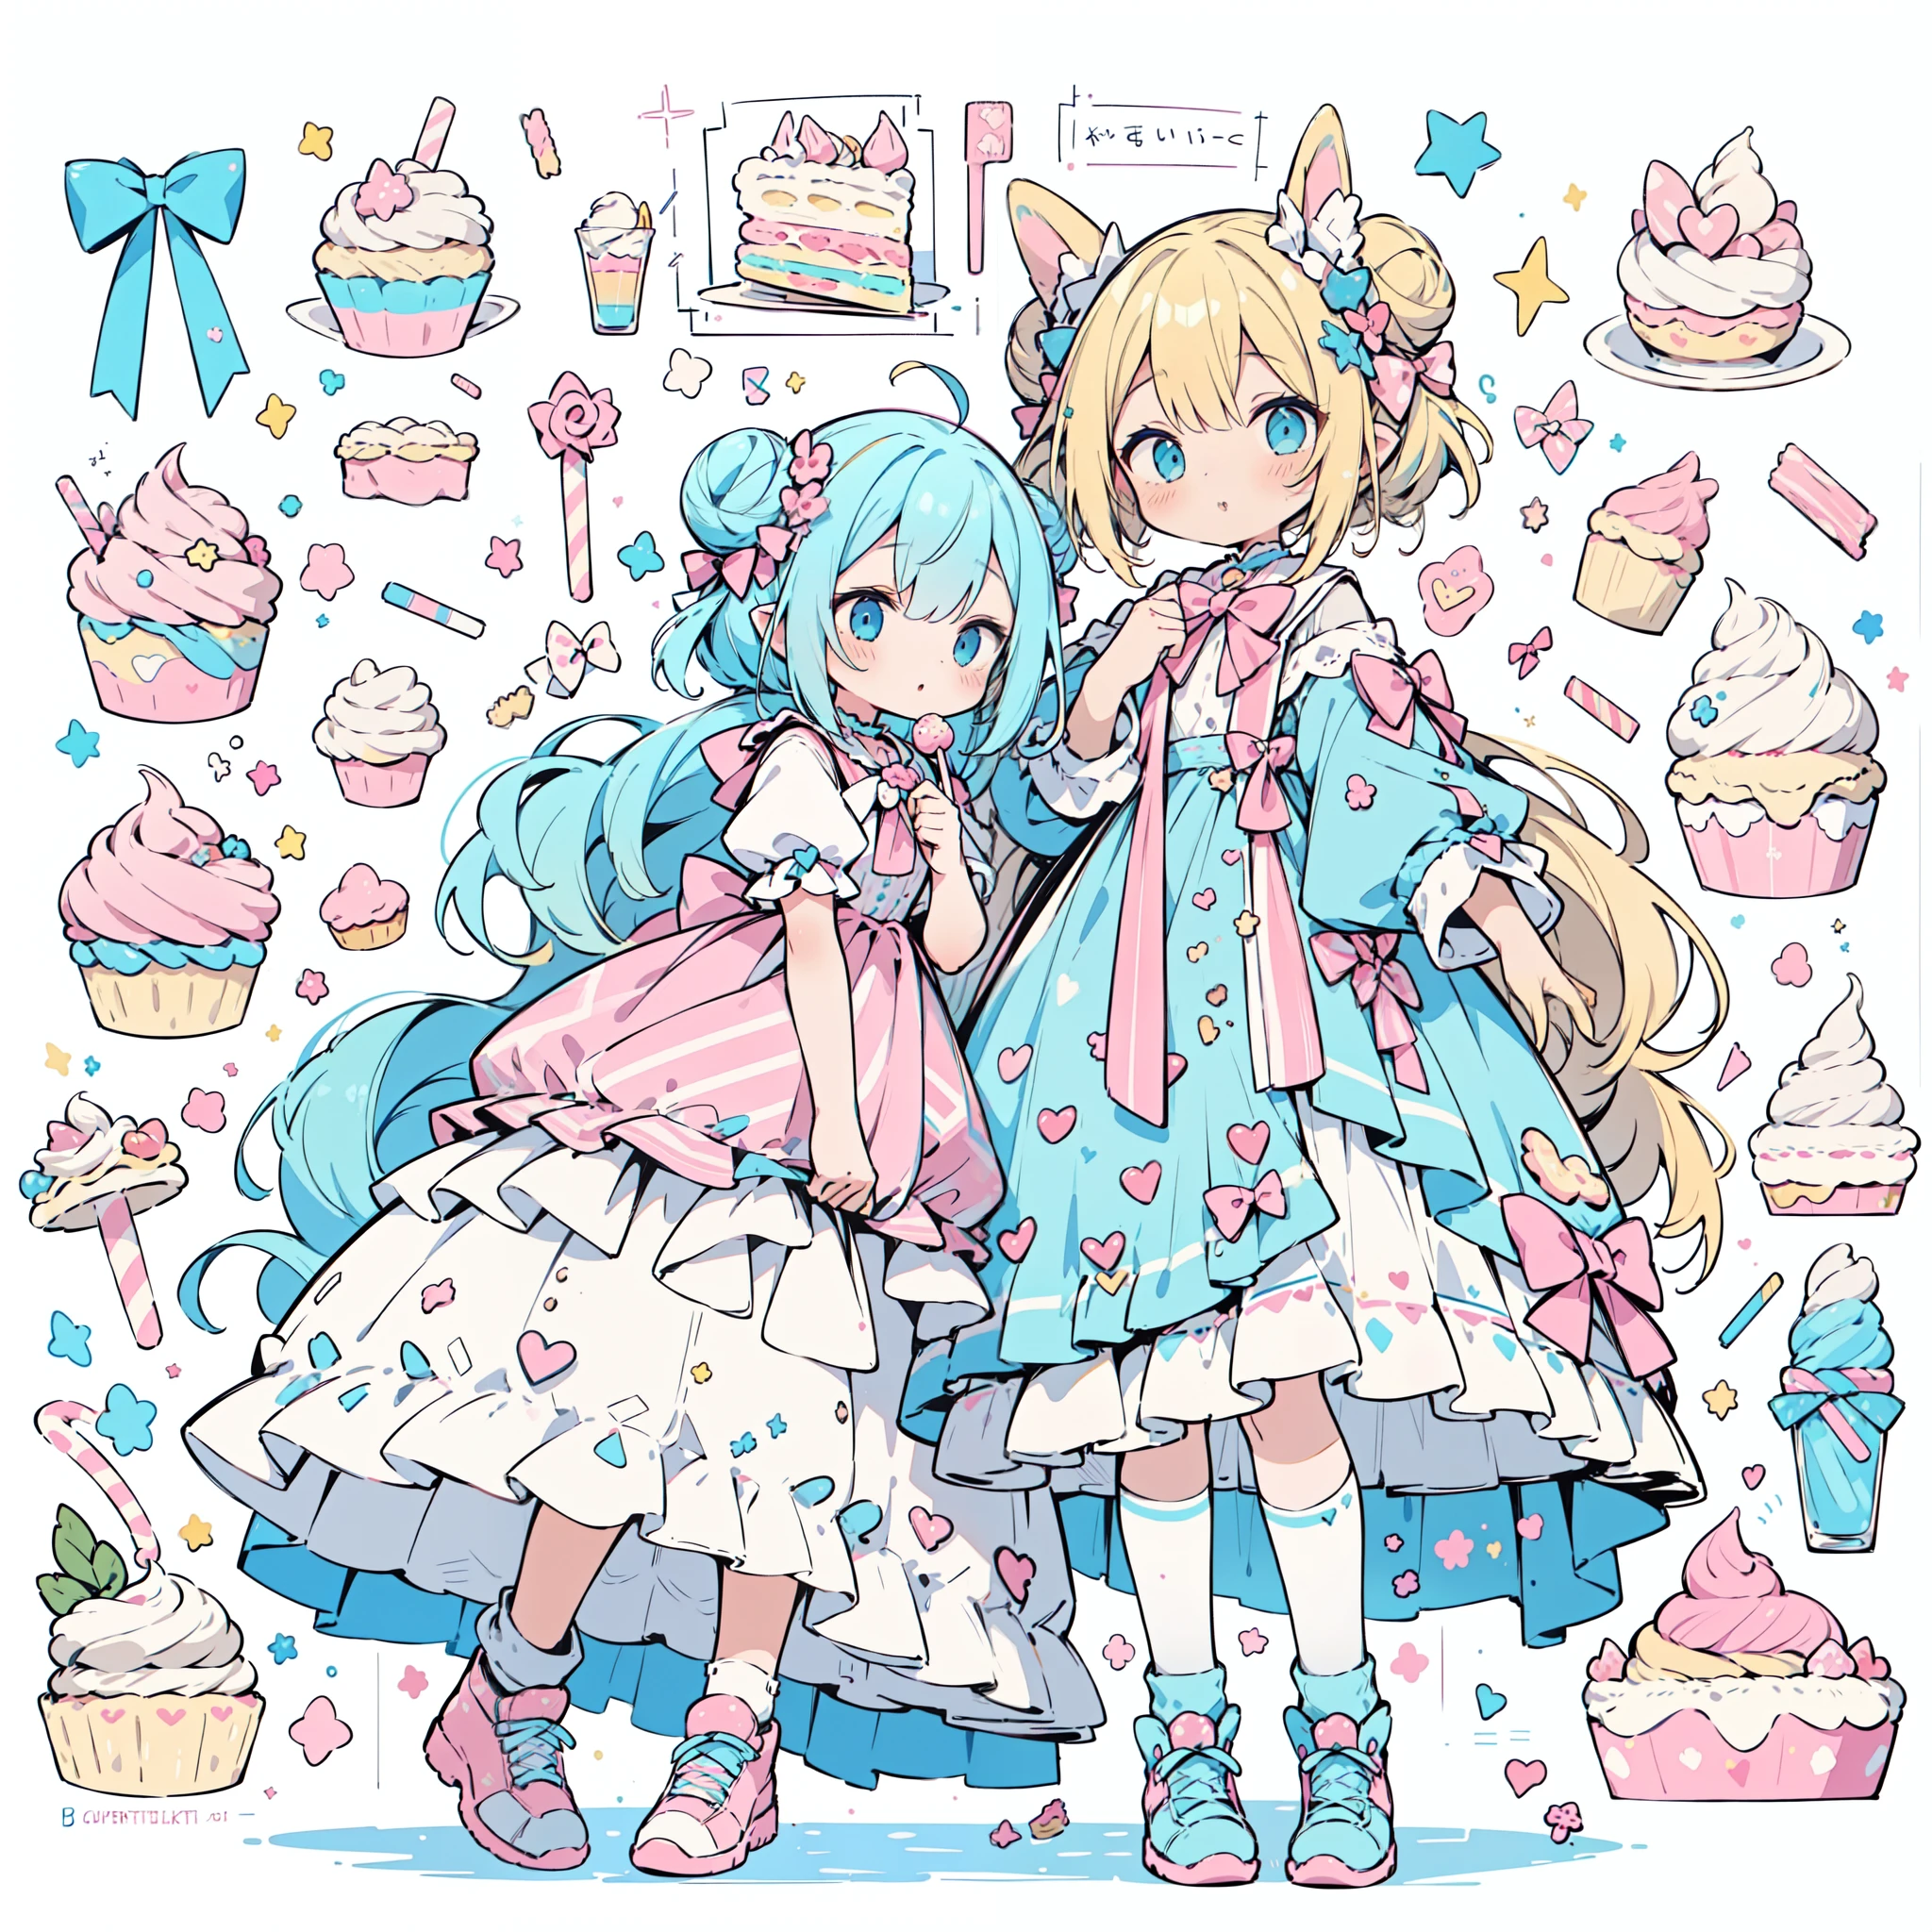 1女孩, 柔和的色彩, (调色板是黄色:1.2, 蓝色的:1.2, 粉色的:1.2), (blonde with 蓝色的 hair buns), 坐在用糖果和糕点做成的宝座上, 例如甜甜圈, 小雨, 糖果, 棒棒糖, 糖果cane, 蛋糕, cup蛋糕s, 蛋糕pops, 褶边和蕾丝, 圆点图案, 长长的蝙蝠耳朵